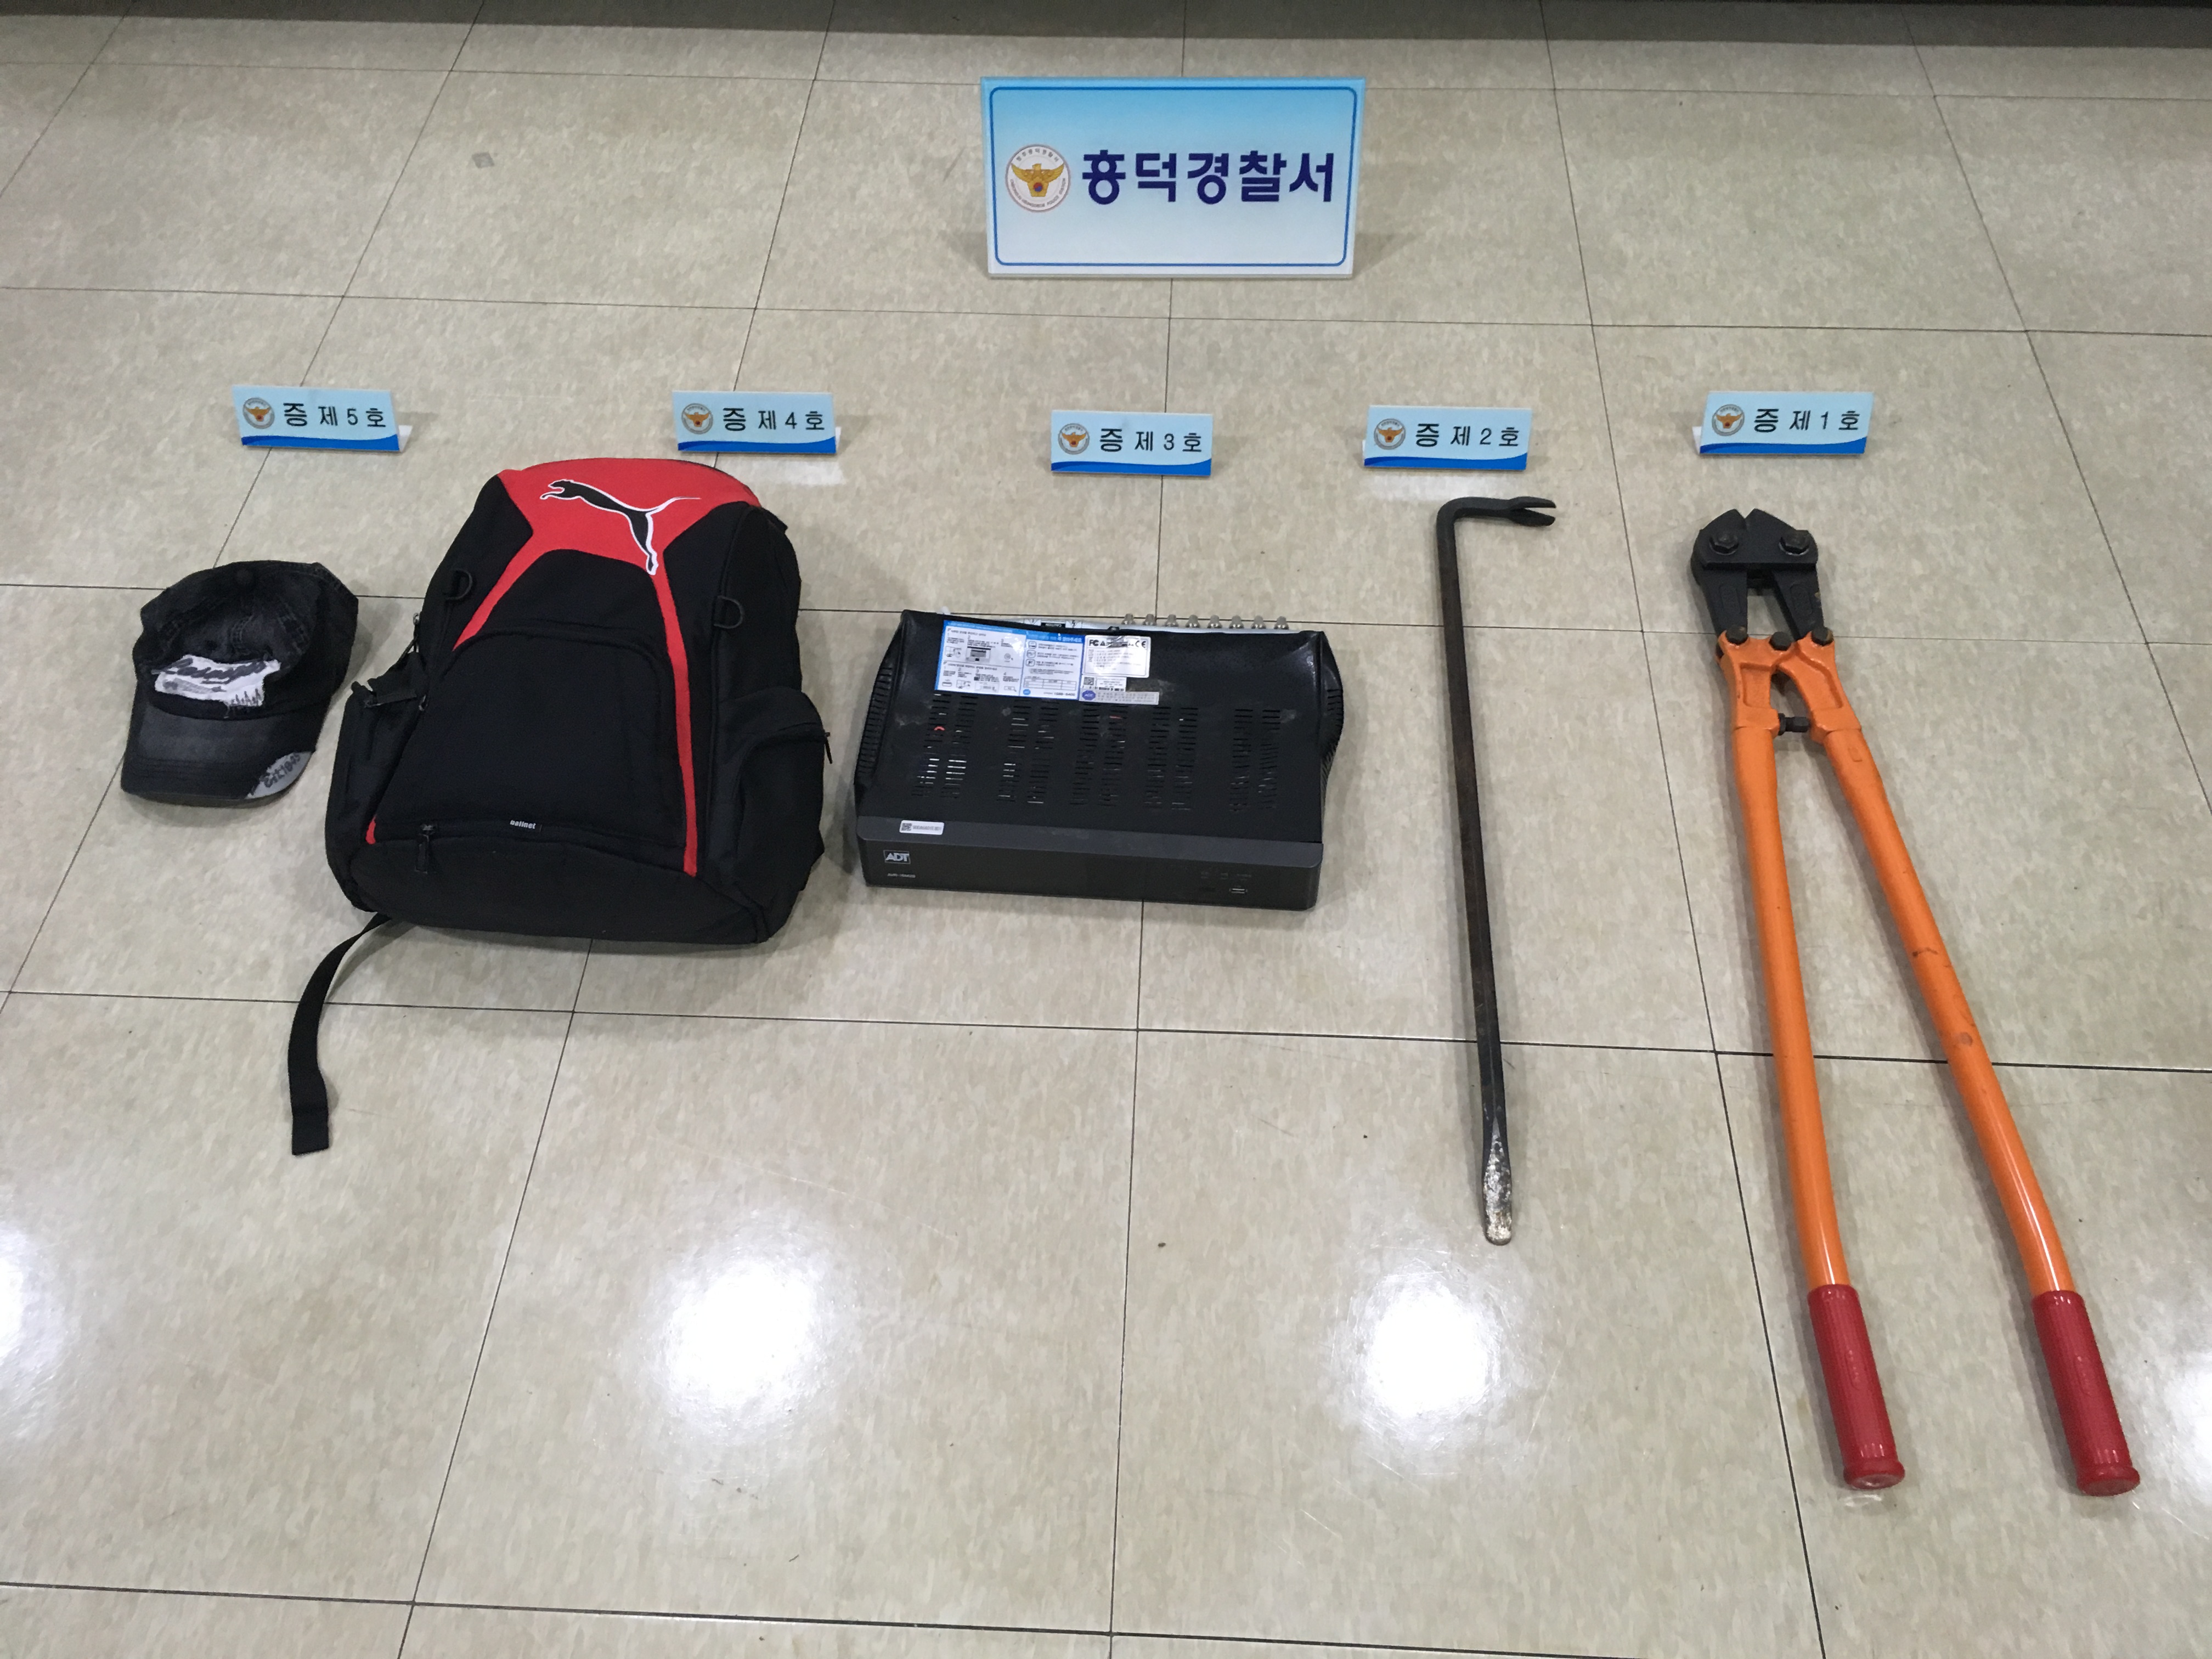 황씨가 난을 훔칠 때 사용한 도구들. 청주흥덕경찰서 제공 